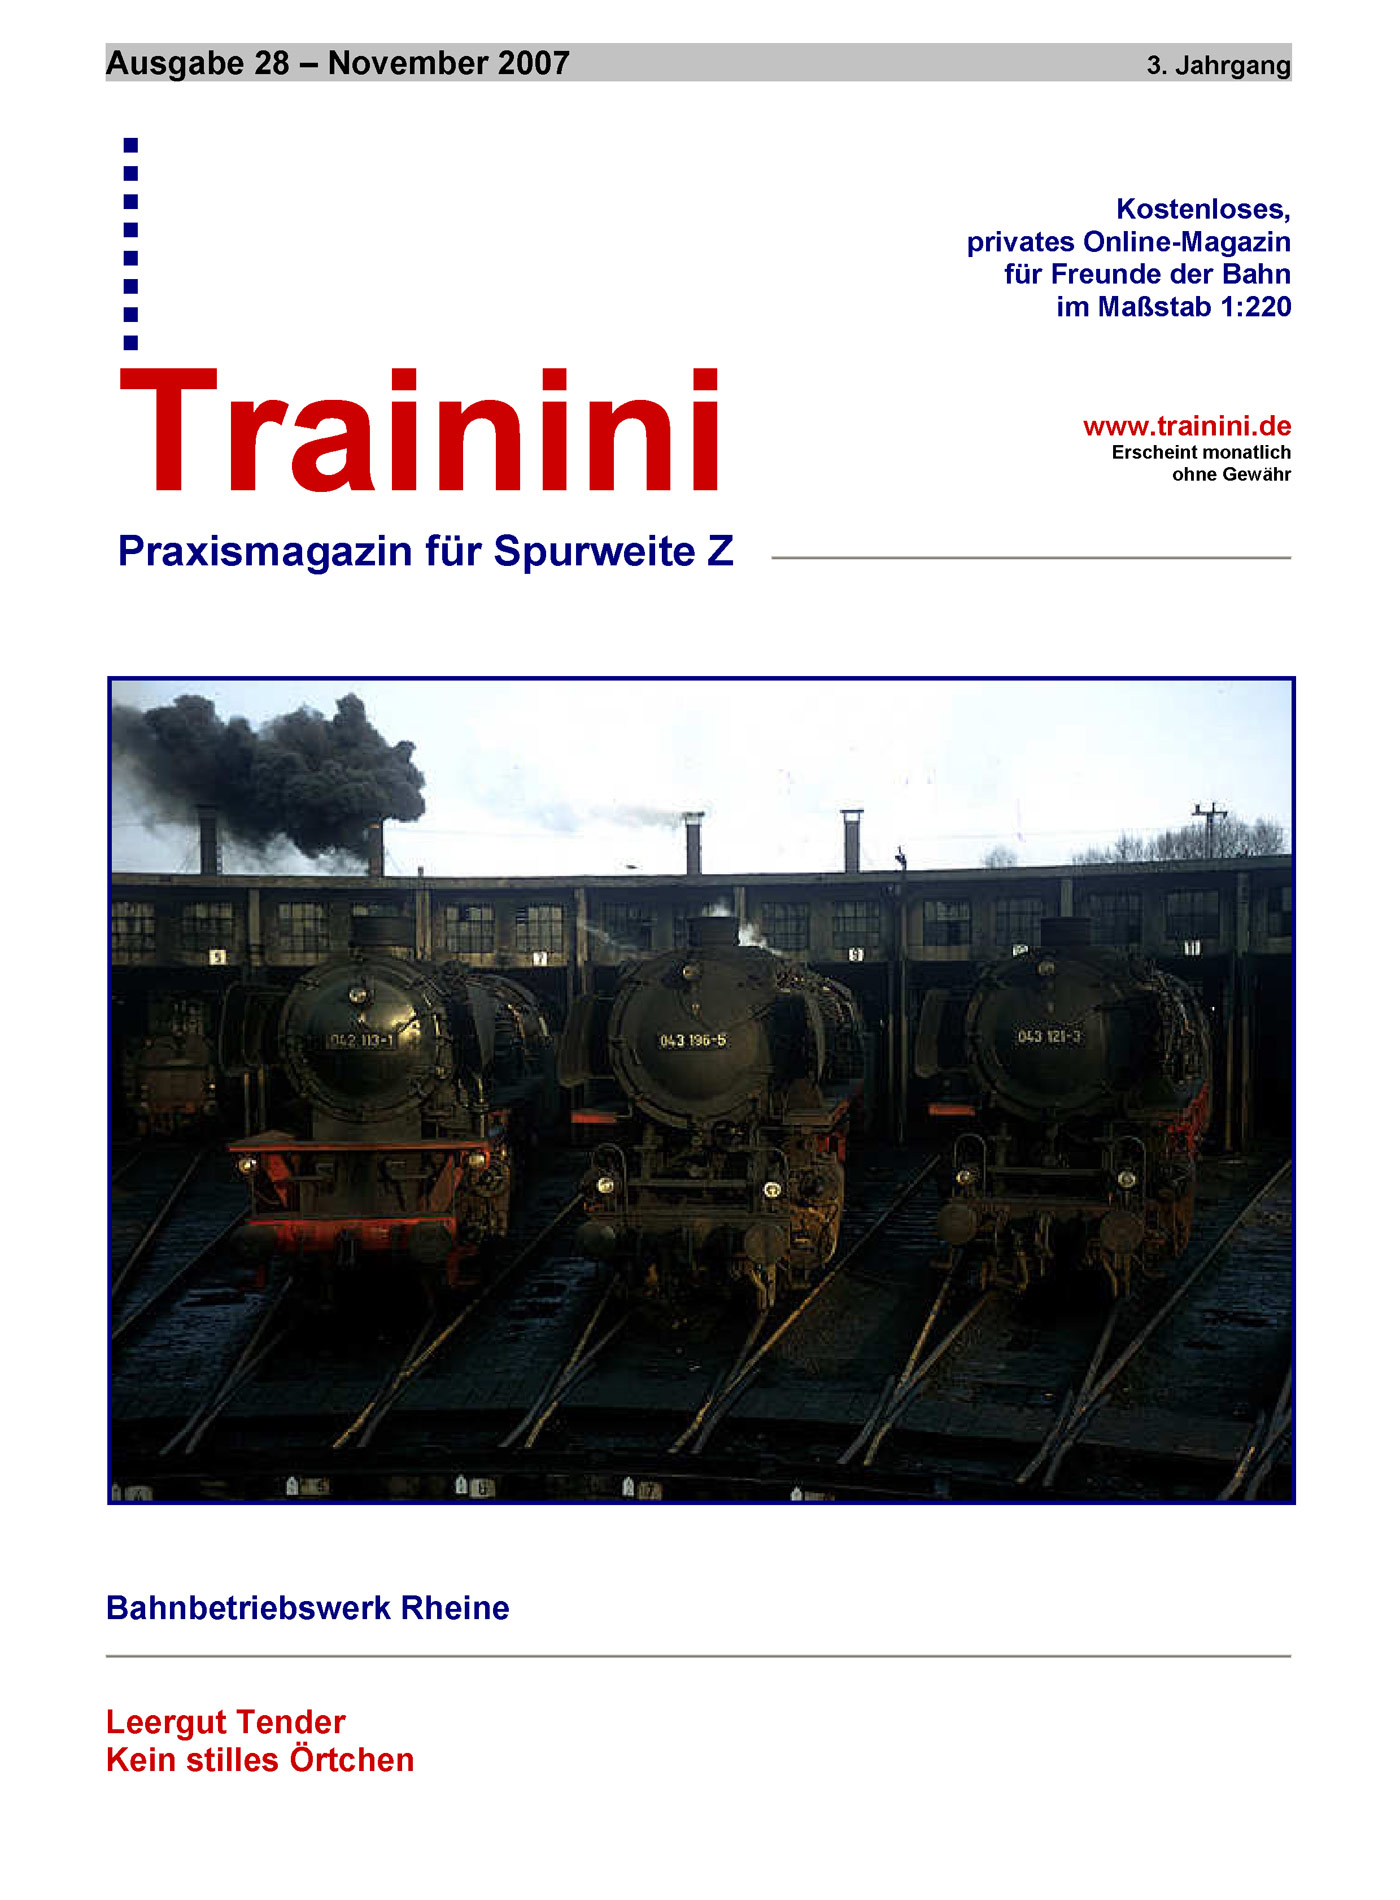 Trainini Ausgabe November 2007